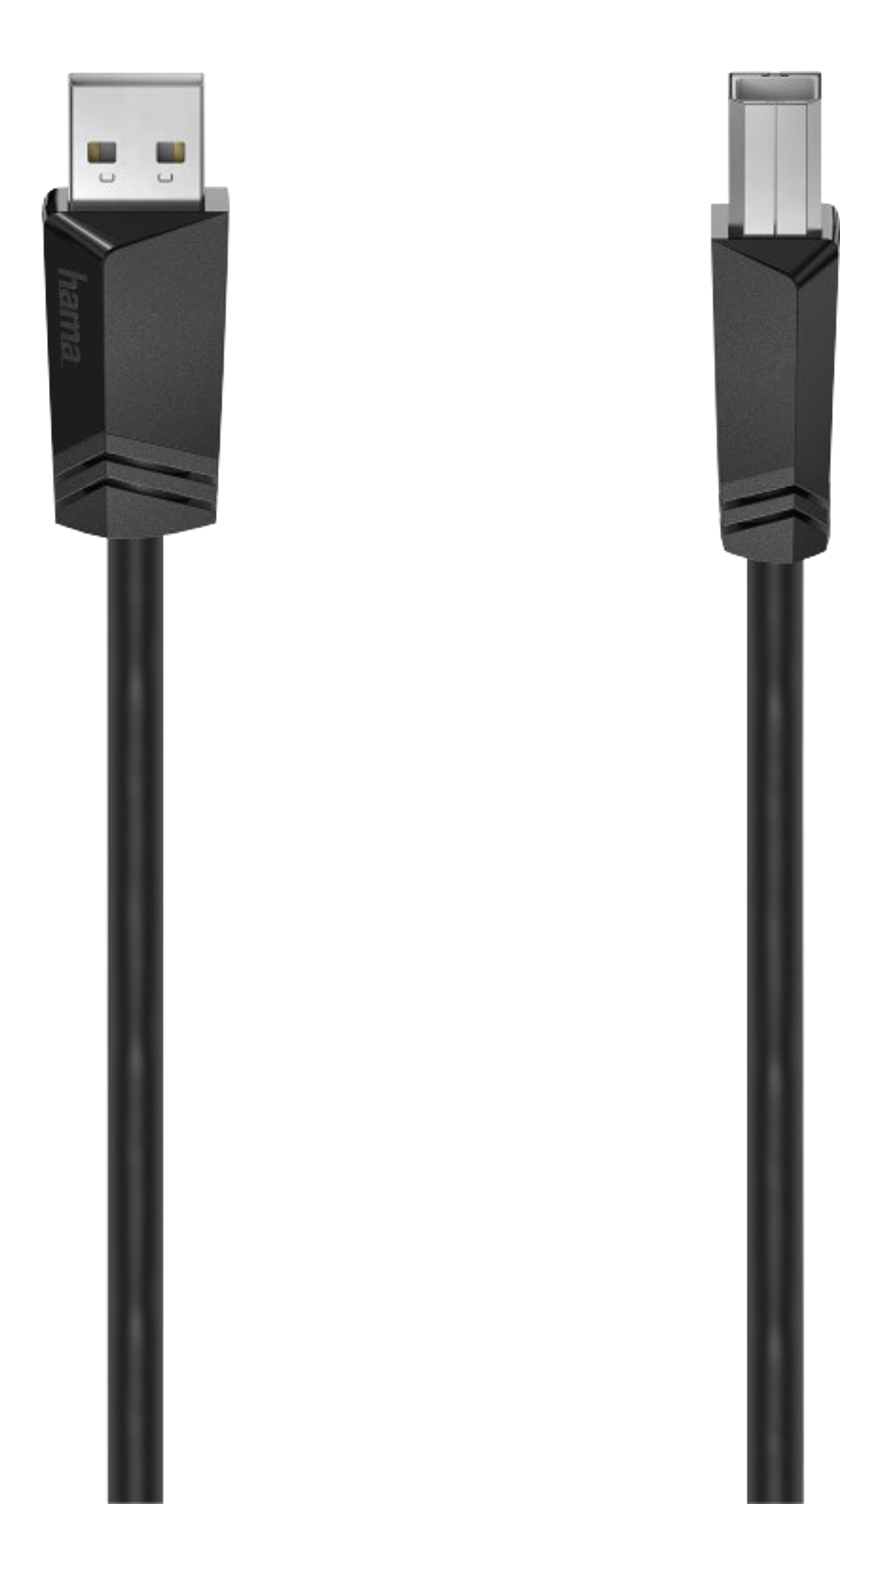 HAMA 200602 - Câble USB, 1.5 m, 480 Mbit/s, Noir